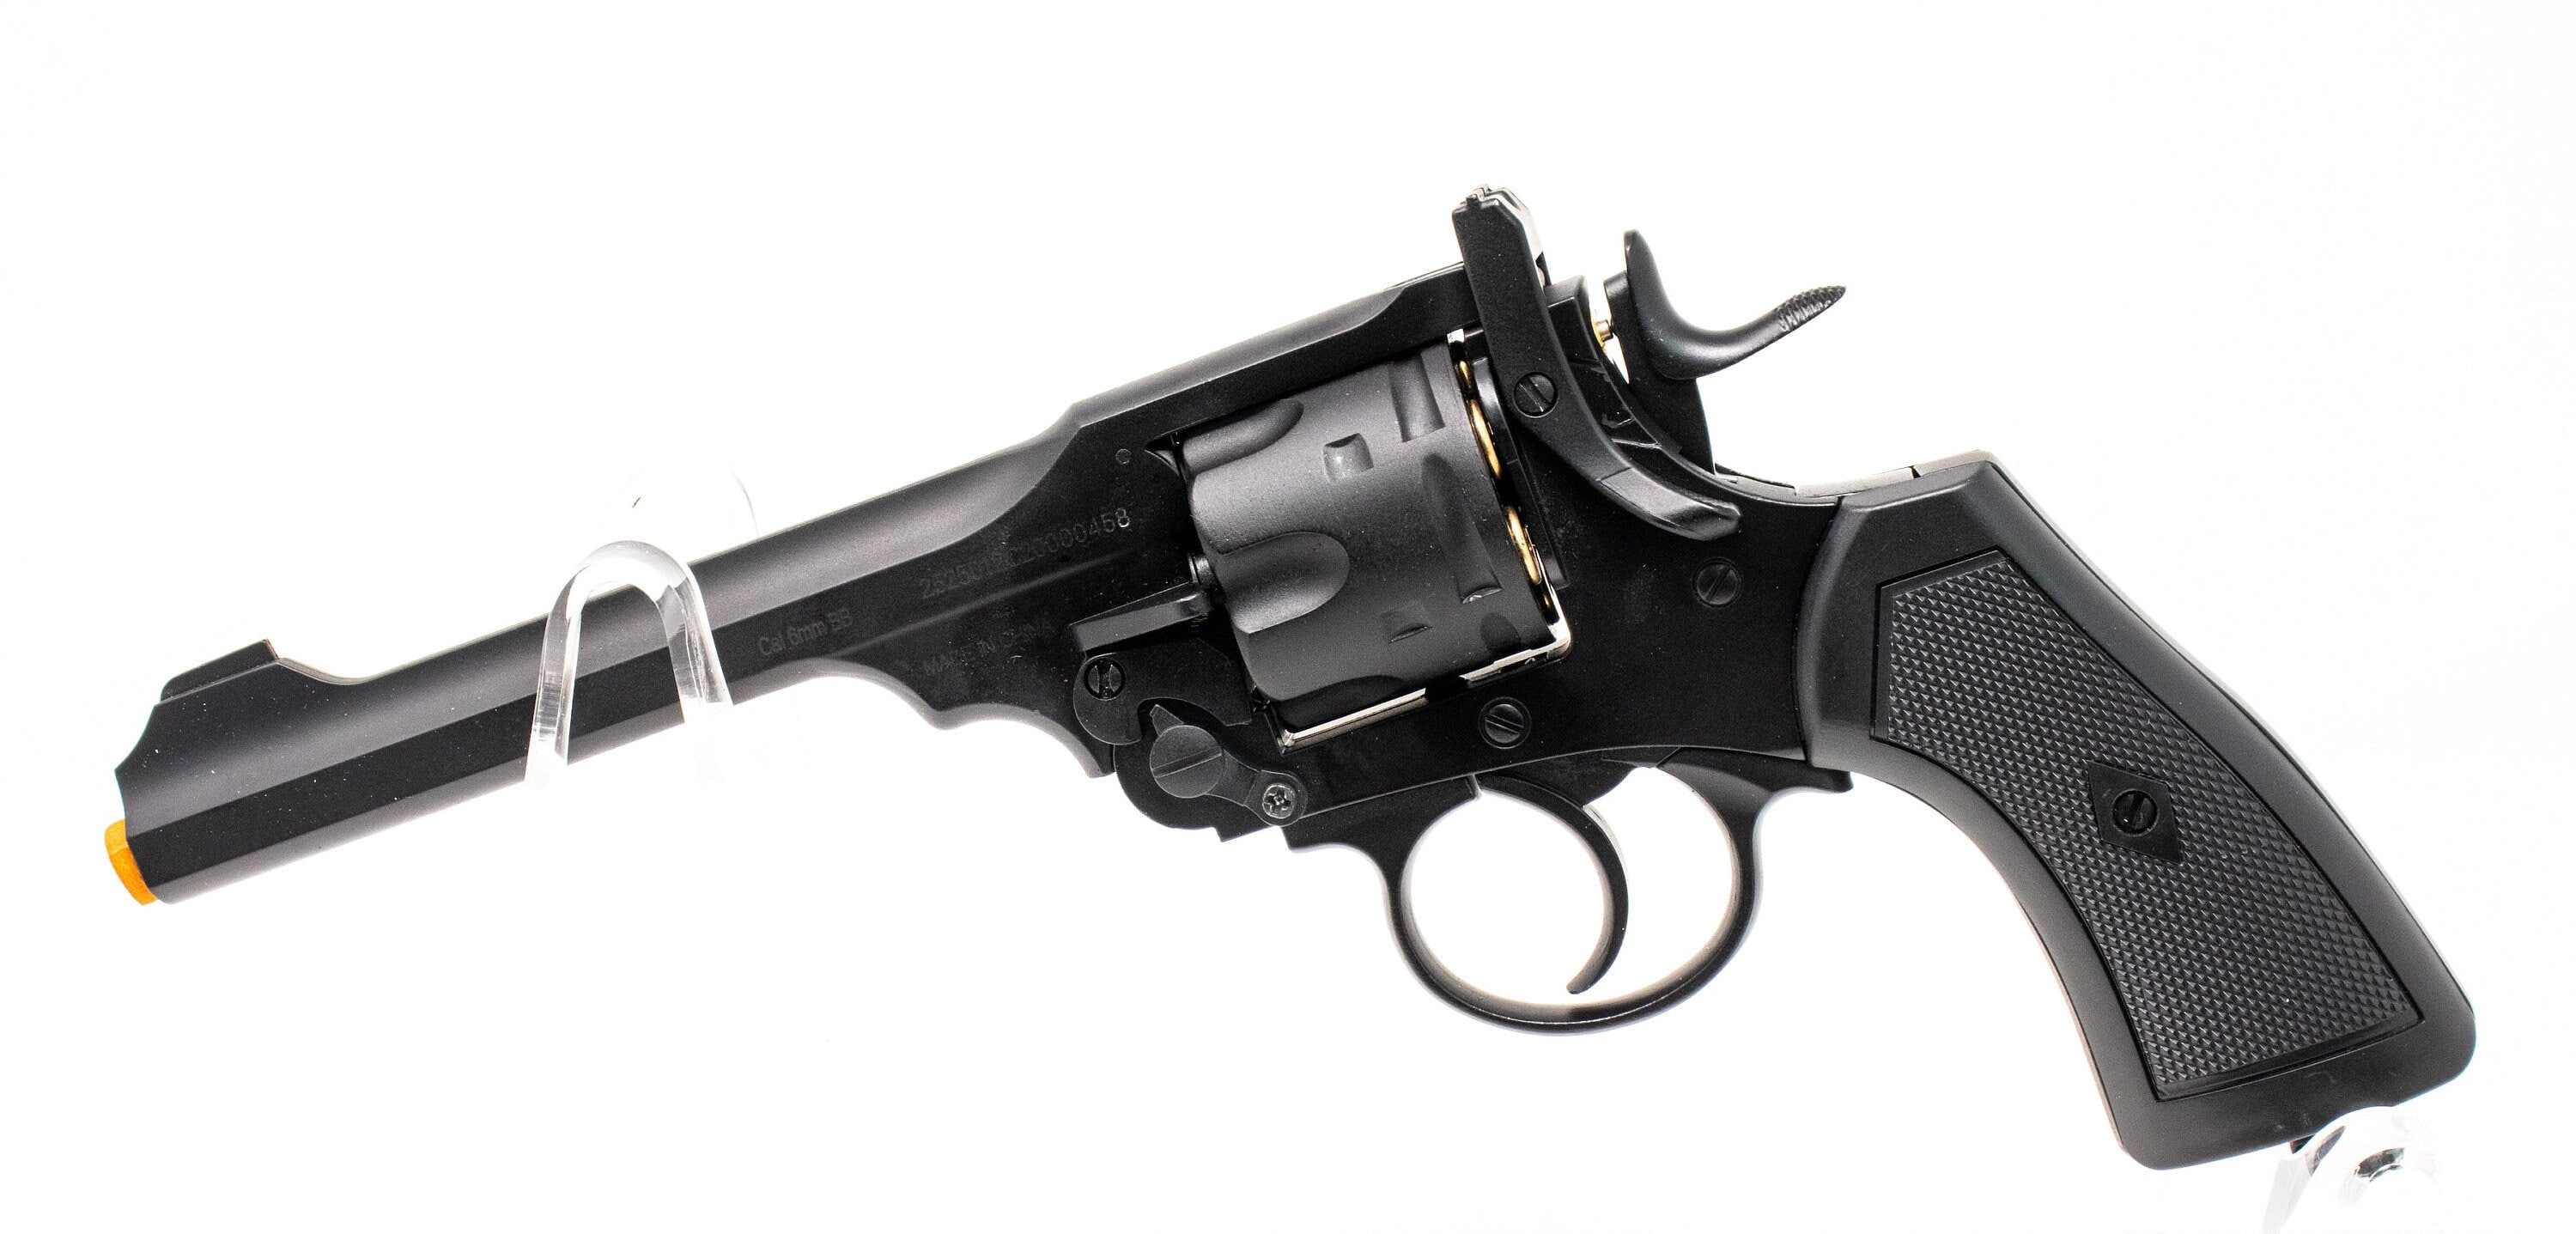 Pistolet revolver Webley pistolet jouet pour cosplay/accessoire à